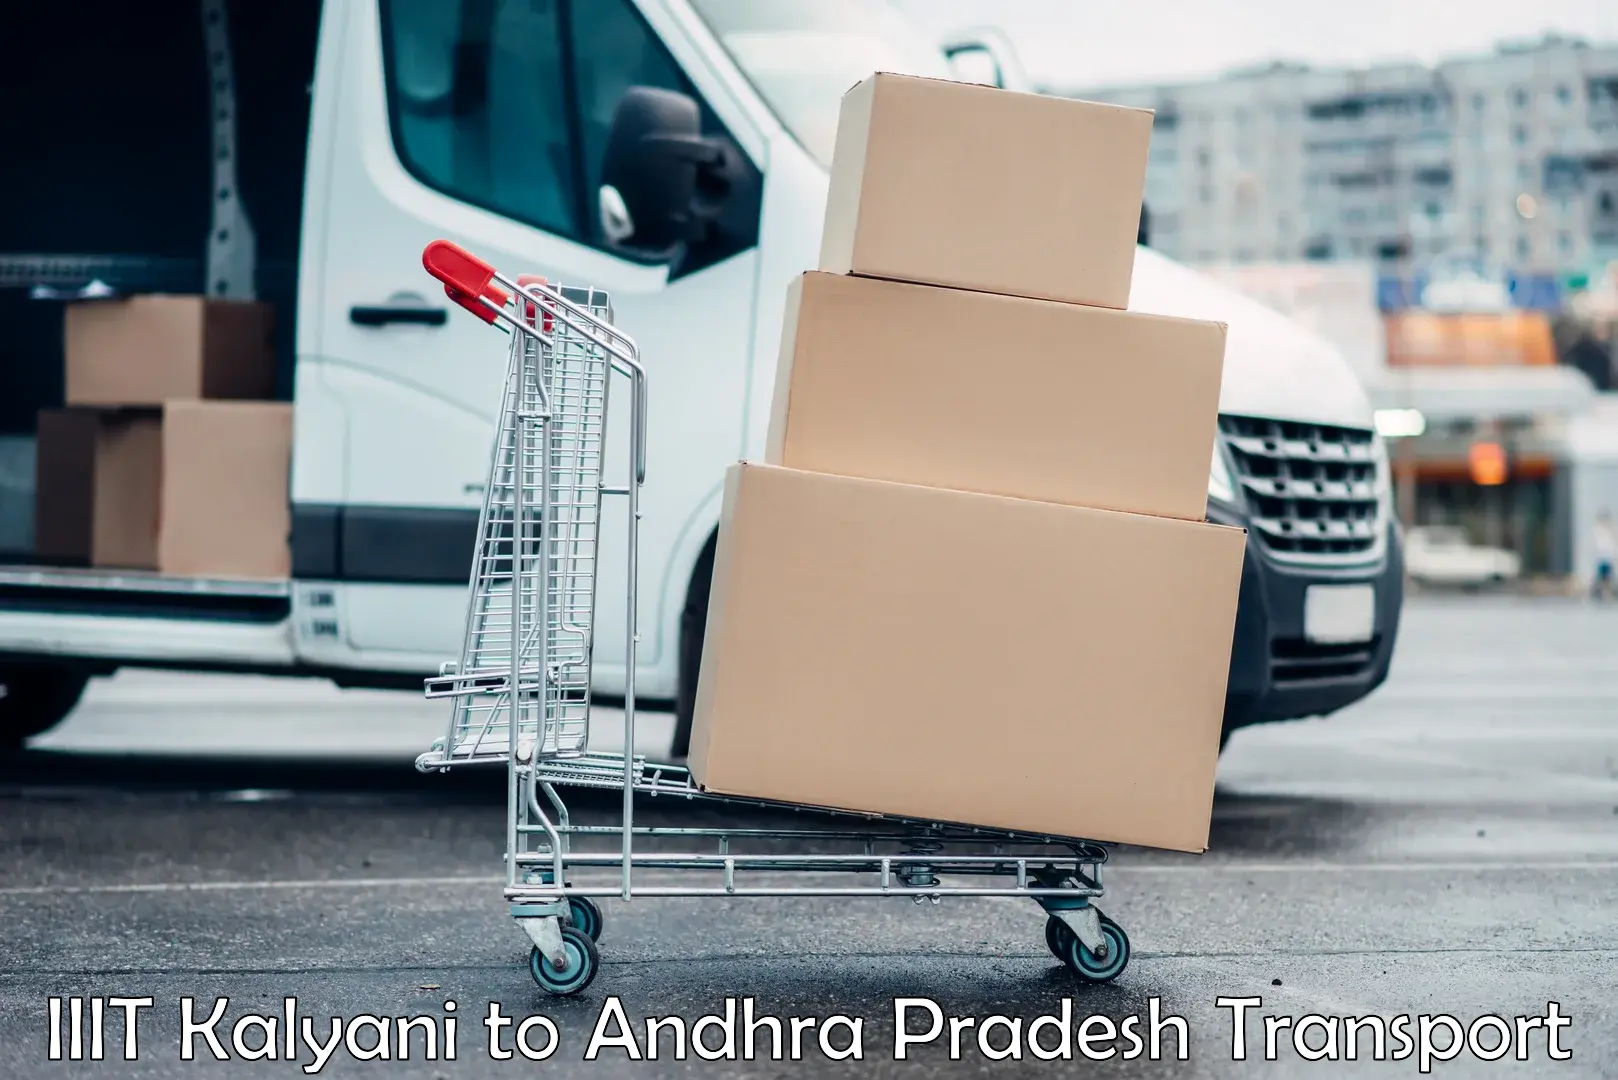 Cargo transportation services IIIT Kalyani to Sirvella